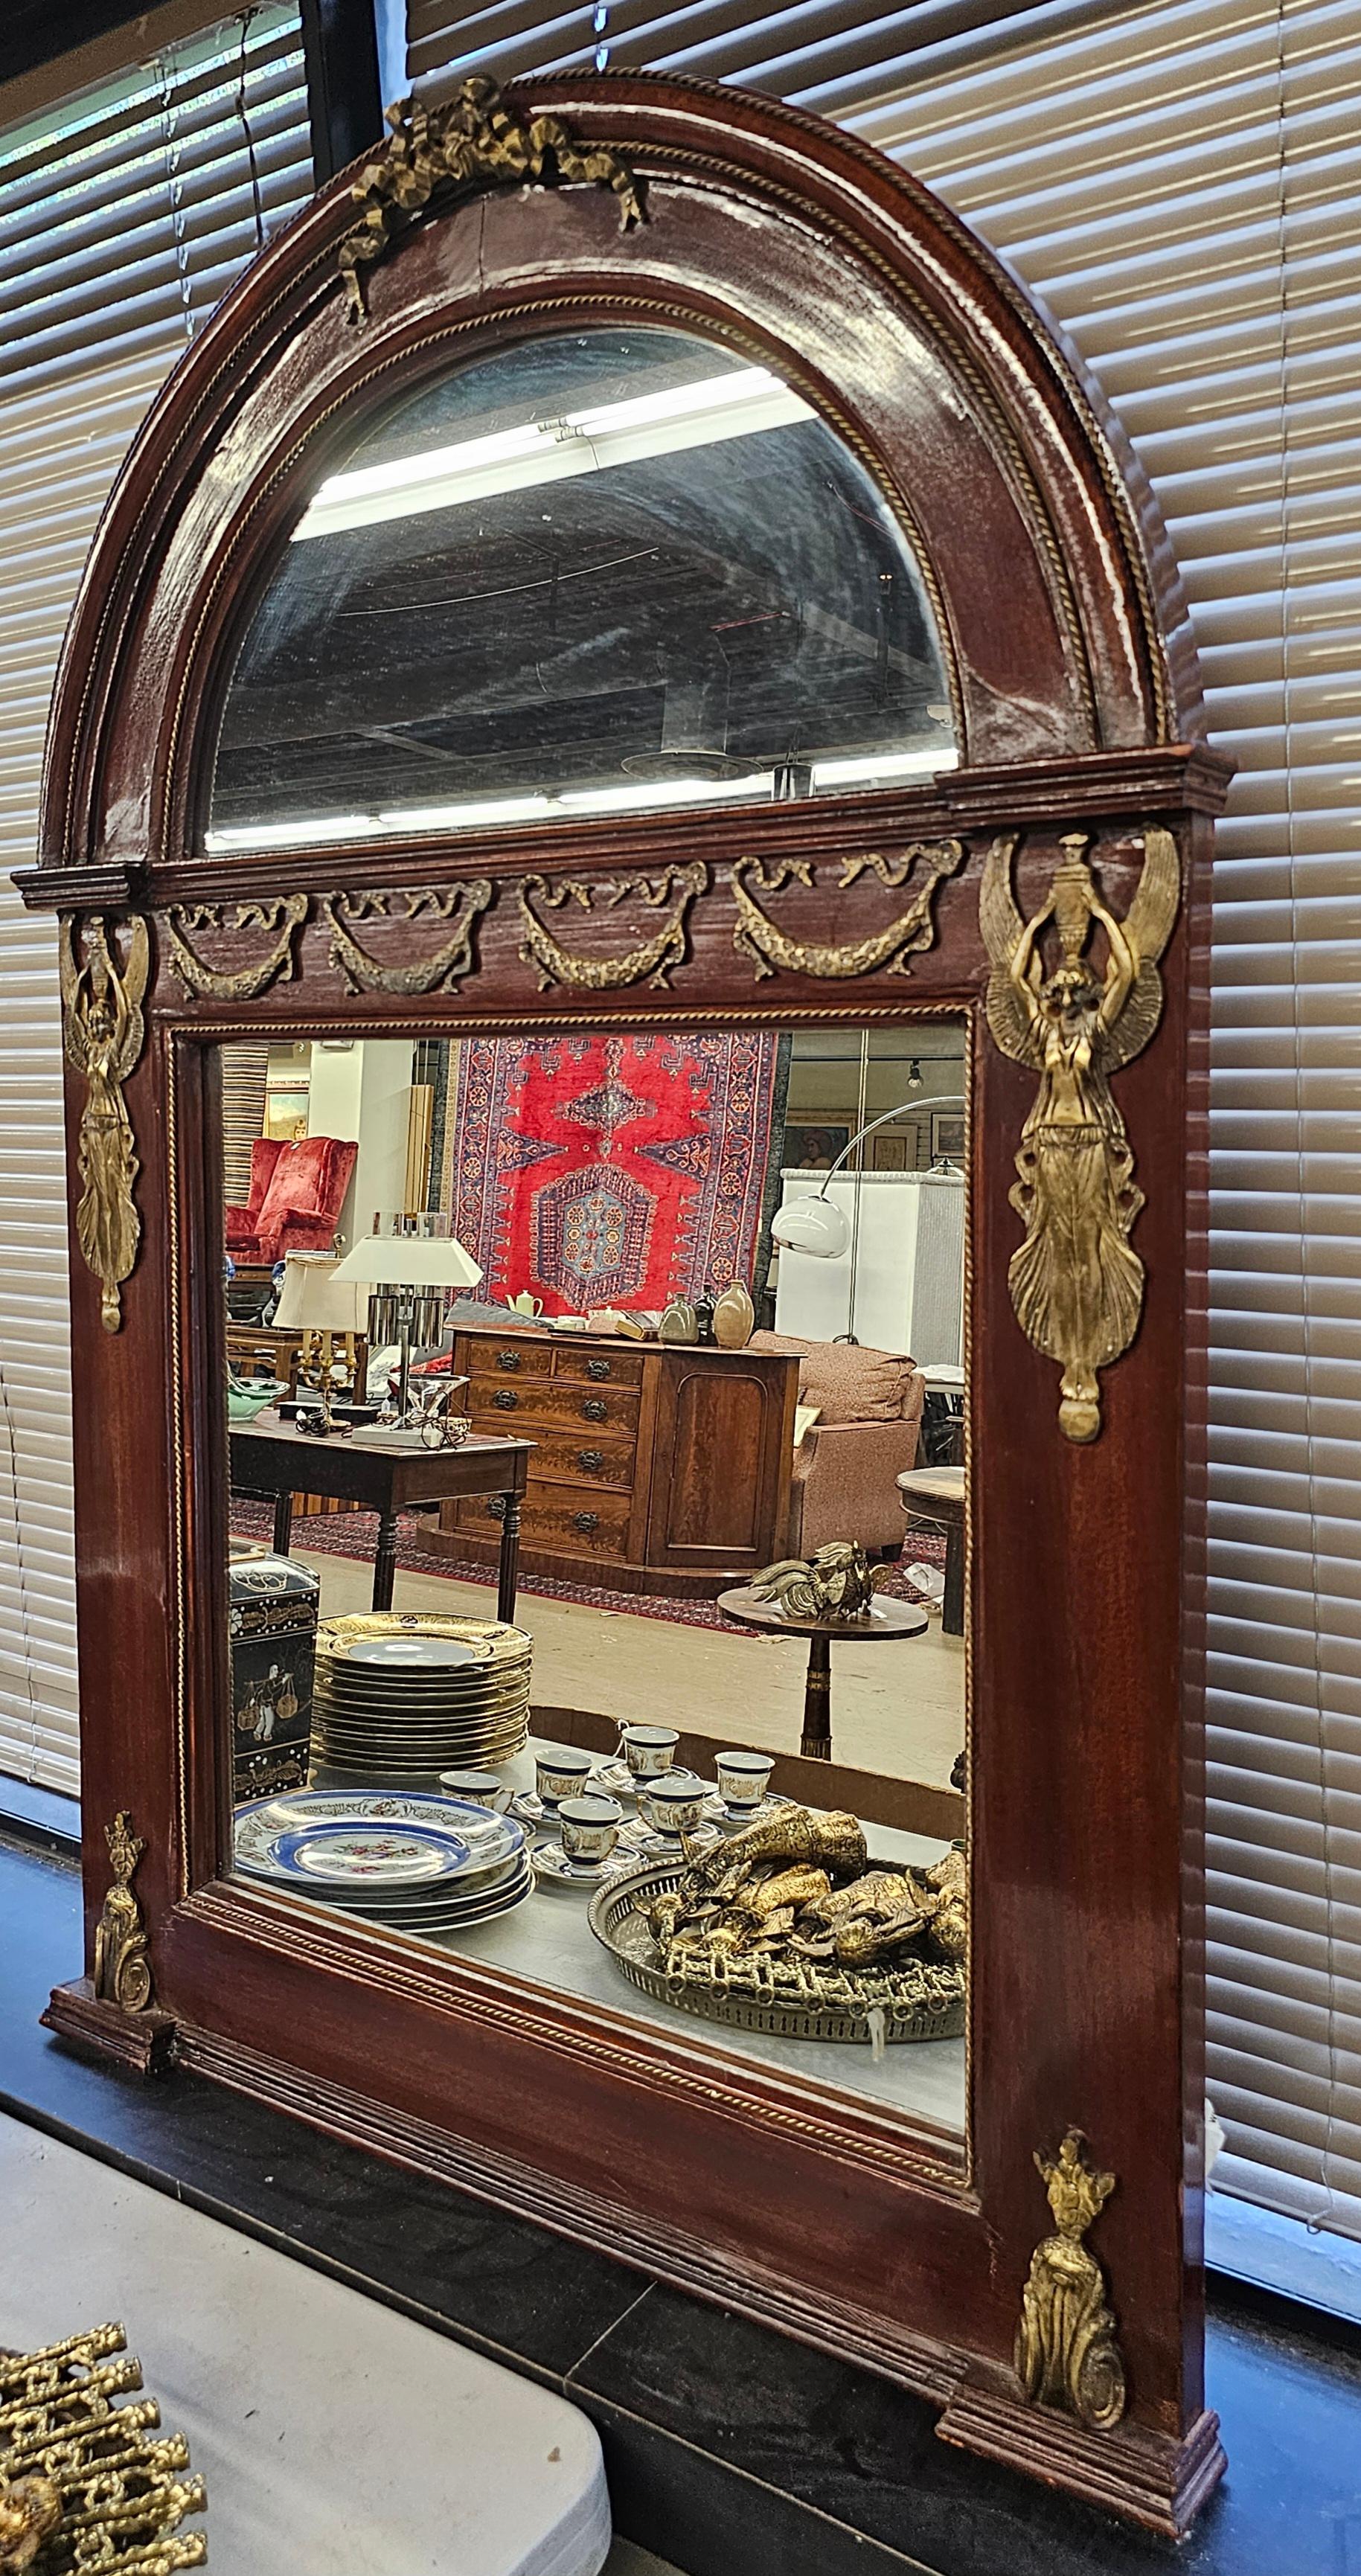 Monumental miroir néoclassique français en acajou richement monté et décoré de bronze doré. 
Cadre en acajou massif verni. Support en bois.